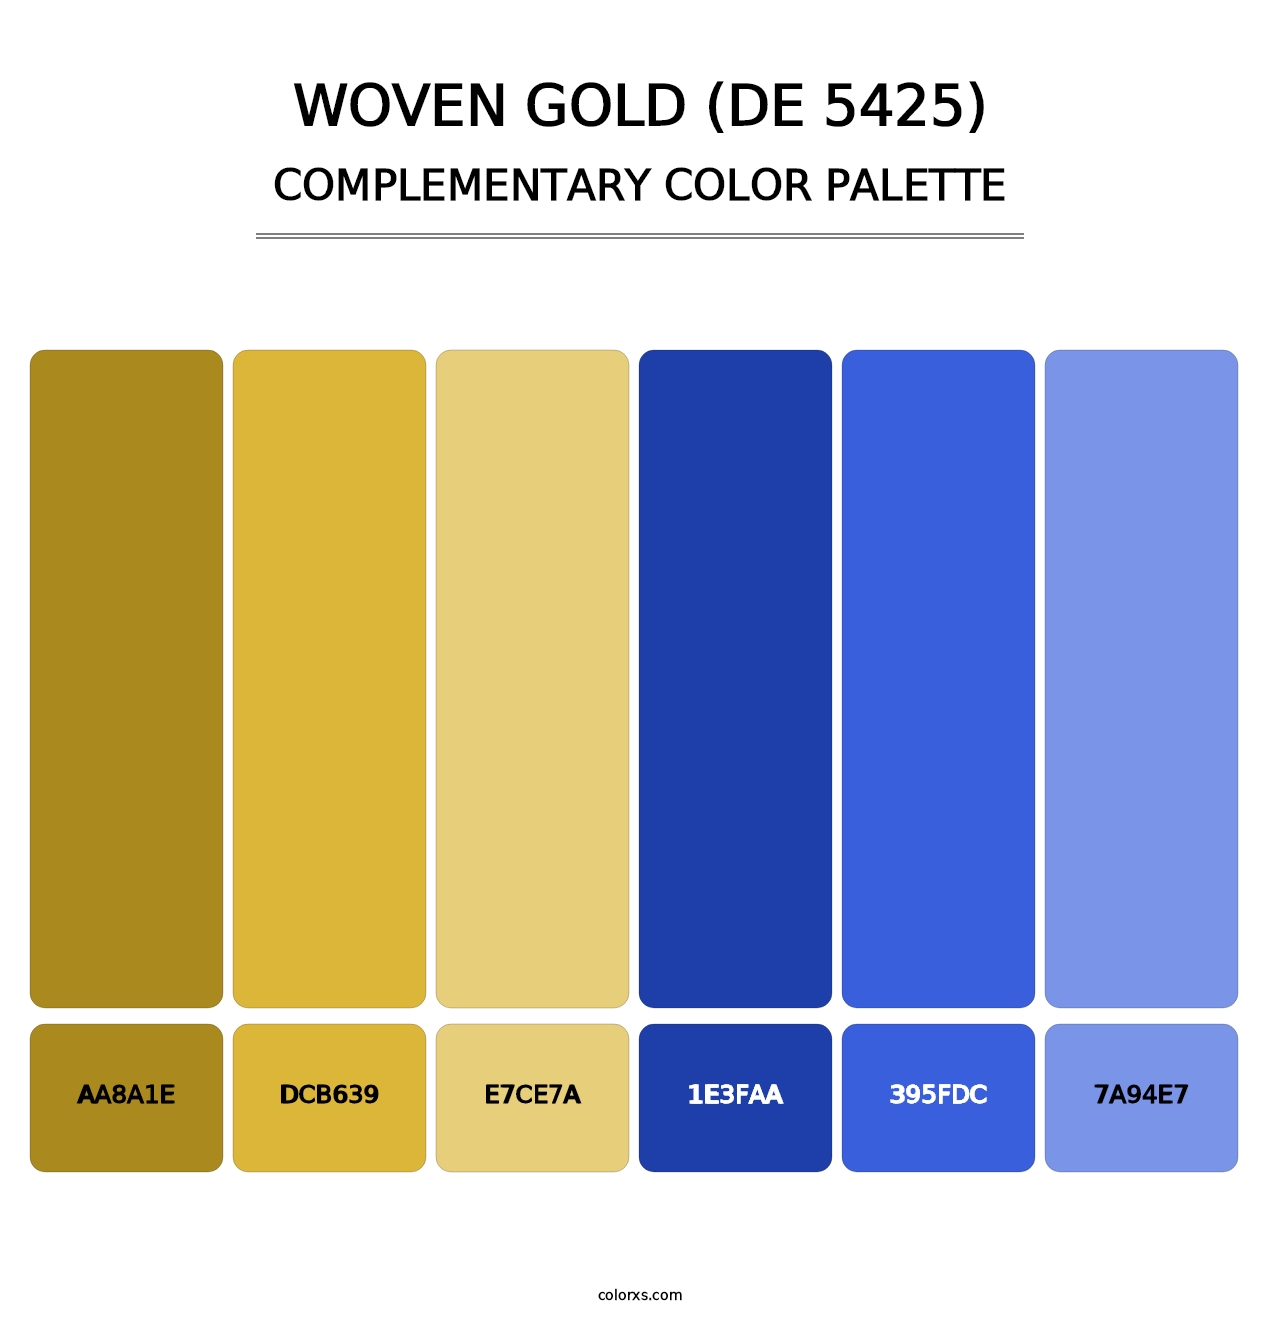 Woven Gold (DE 5425) - Complementary Color Palette